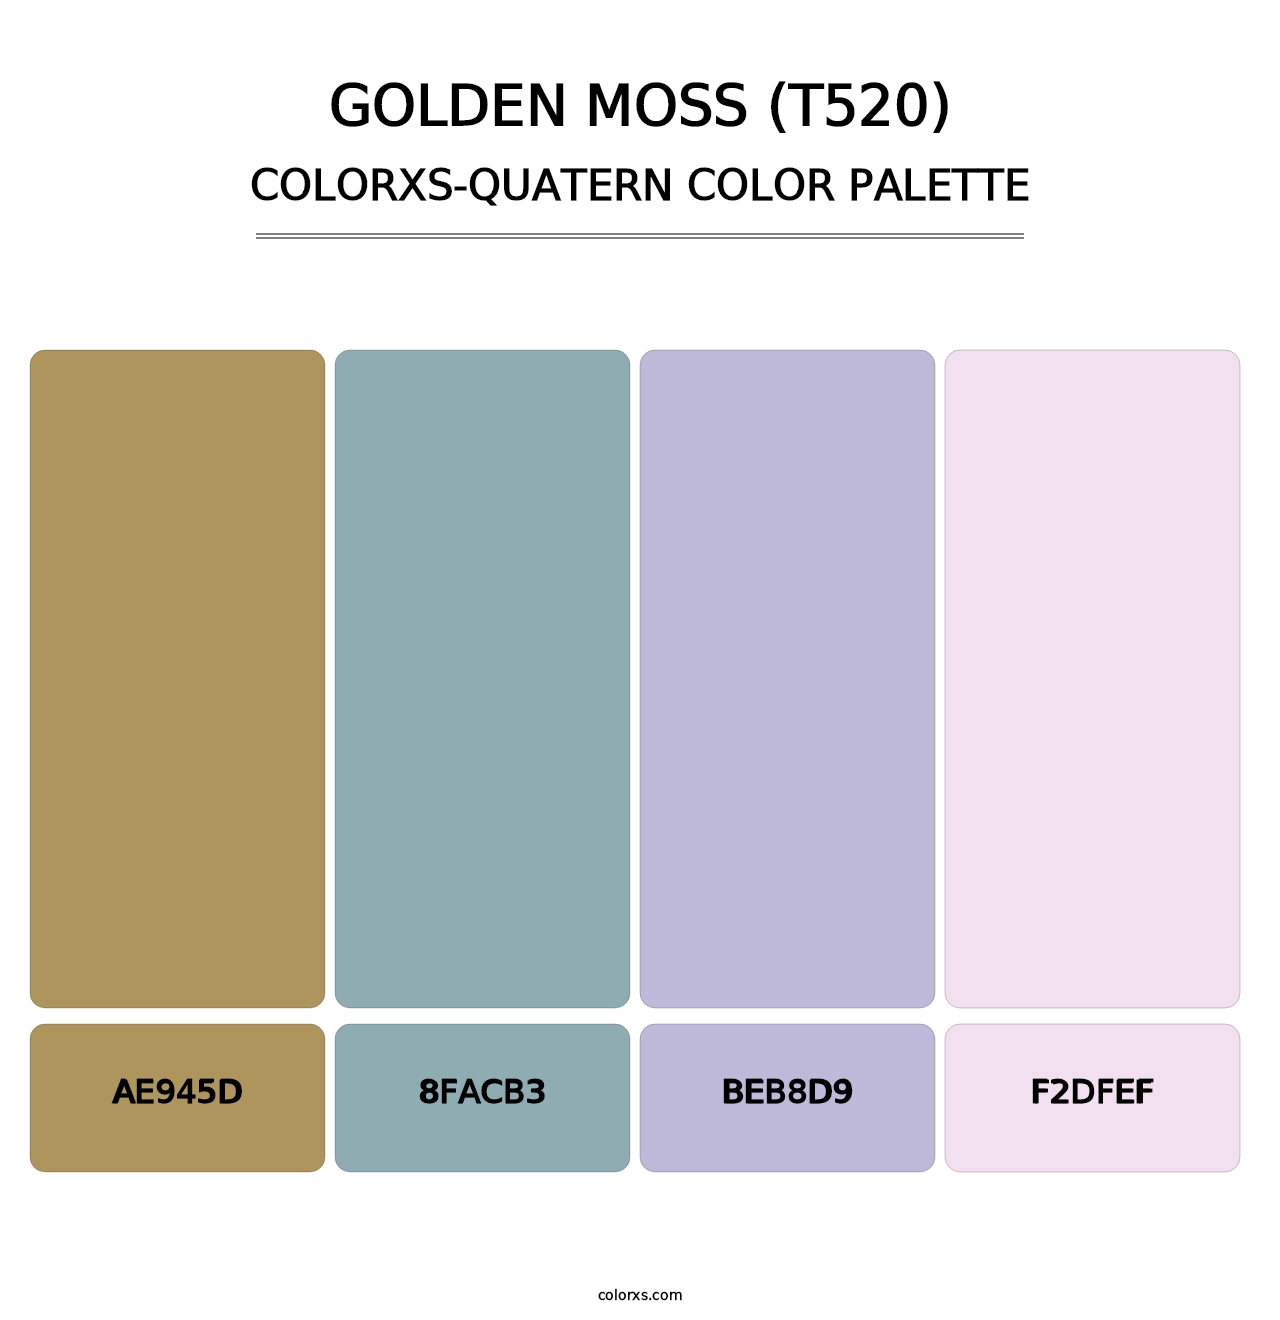 Golden Moss (T520) - Colorxs Quatern Palette